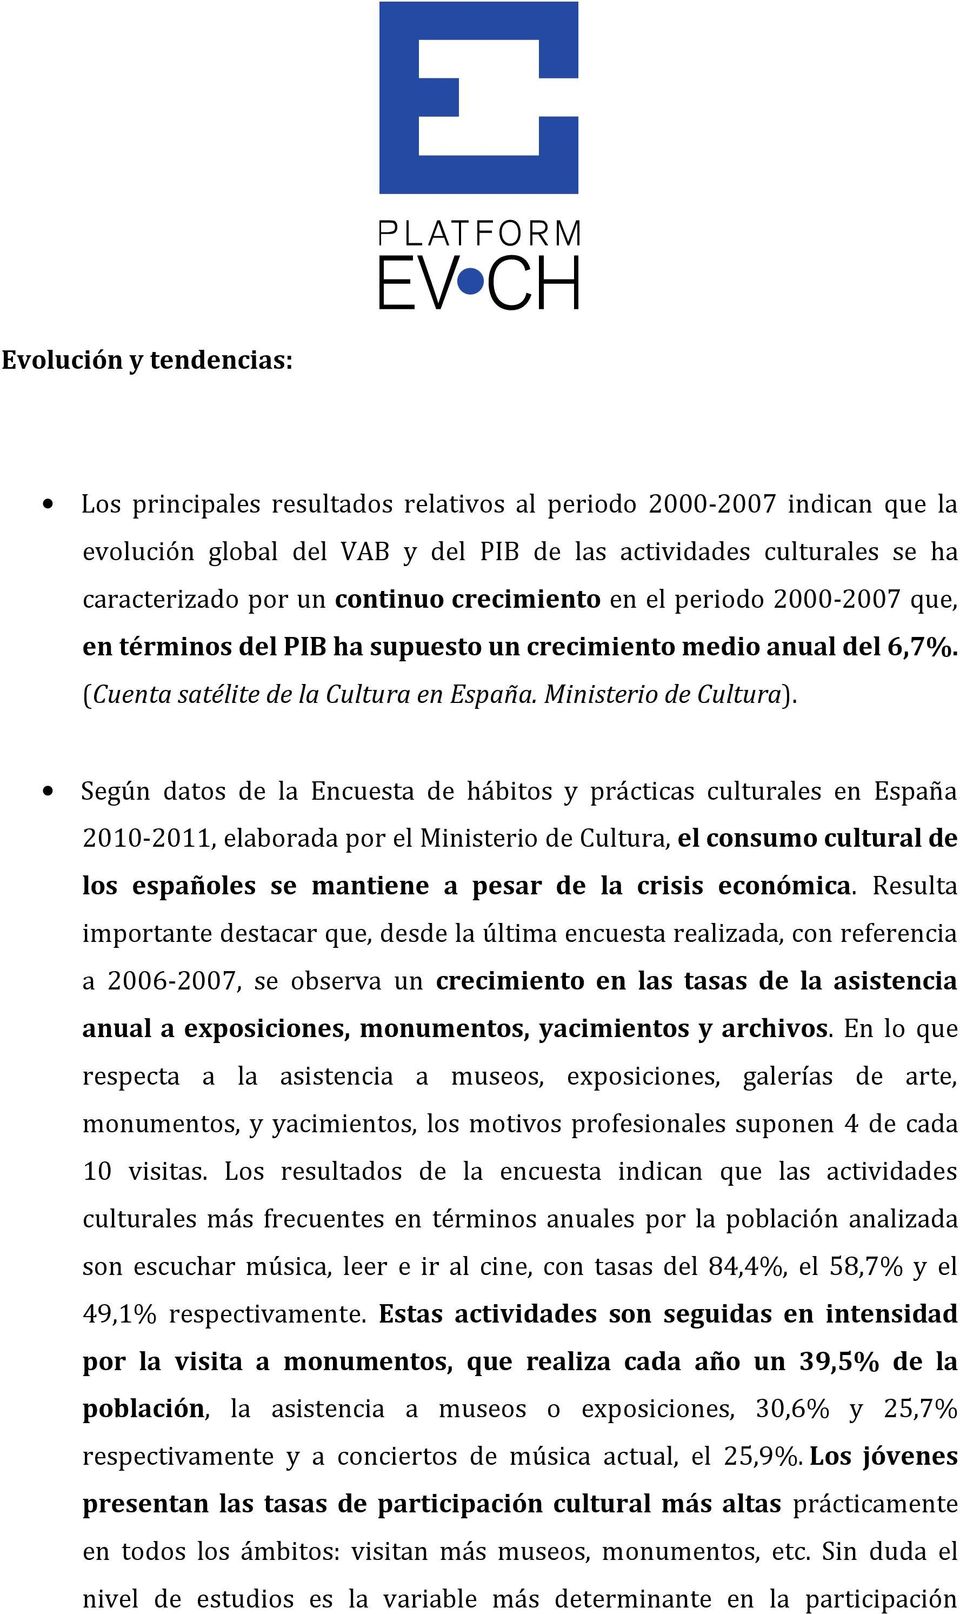 Según datos de la Encuesta de hábitos y prácticas culturales en España 2010-2011, elaborada por el Ministerio de Cultura, el consumo cultural de los españoles se mantiene a pesar de la crisis